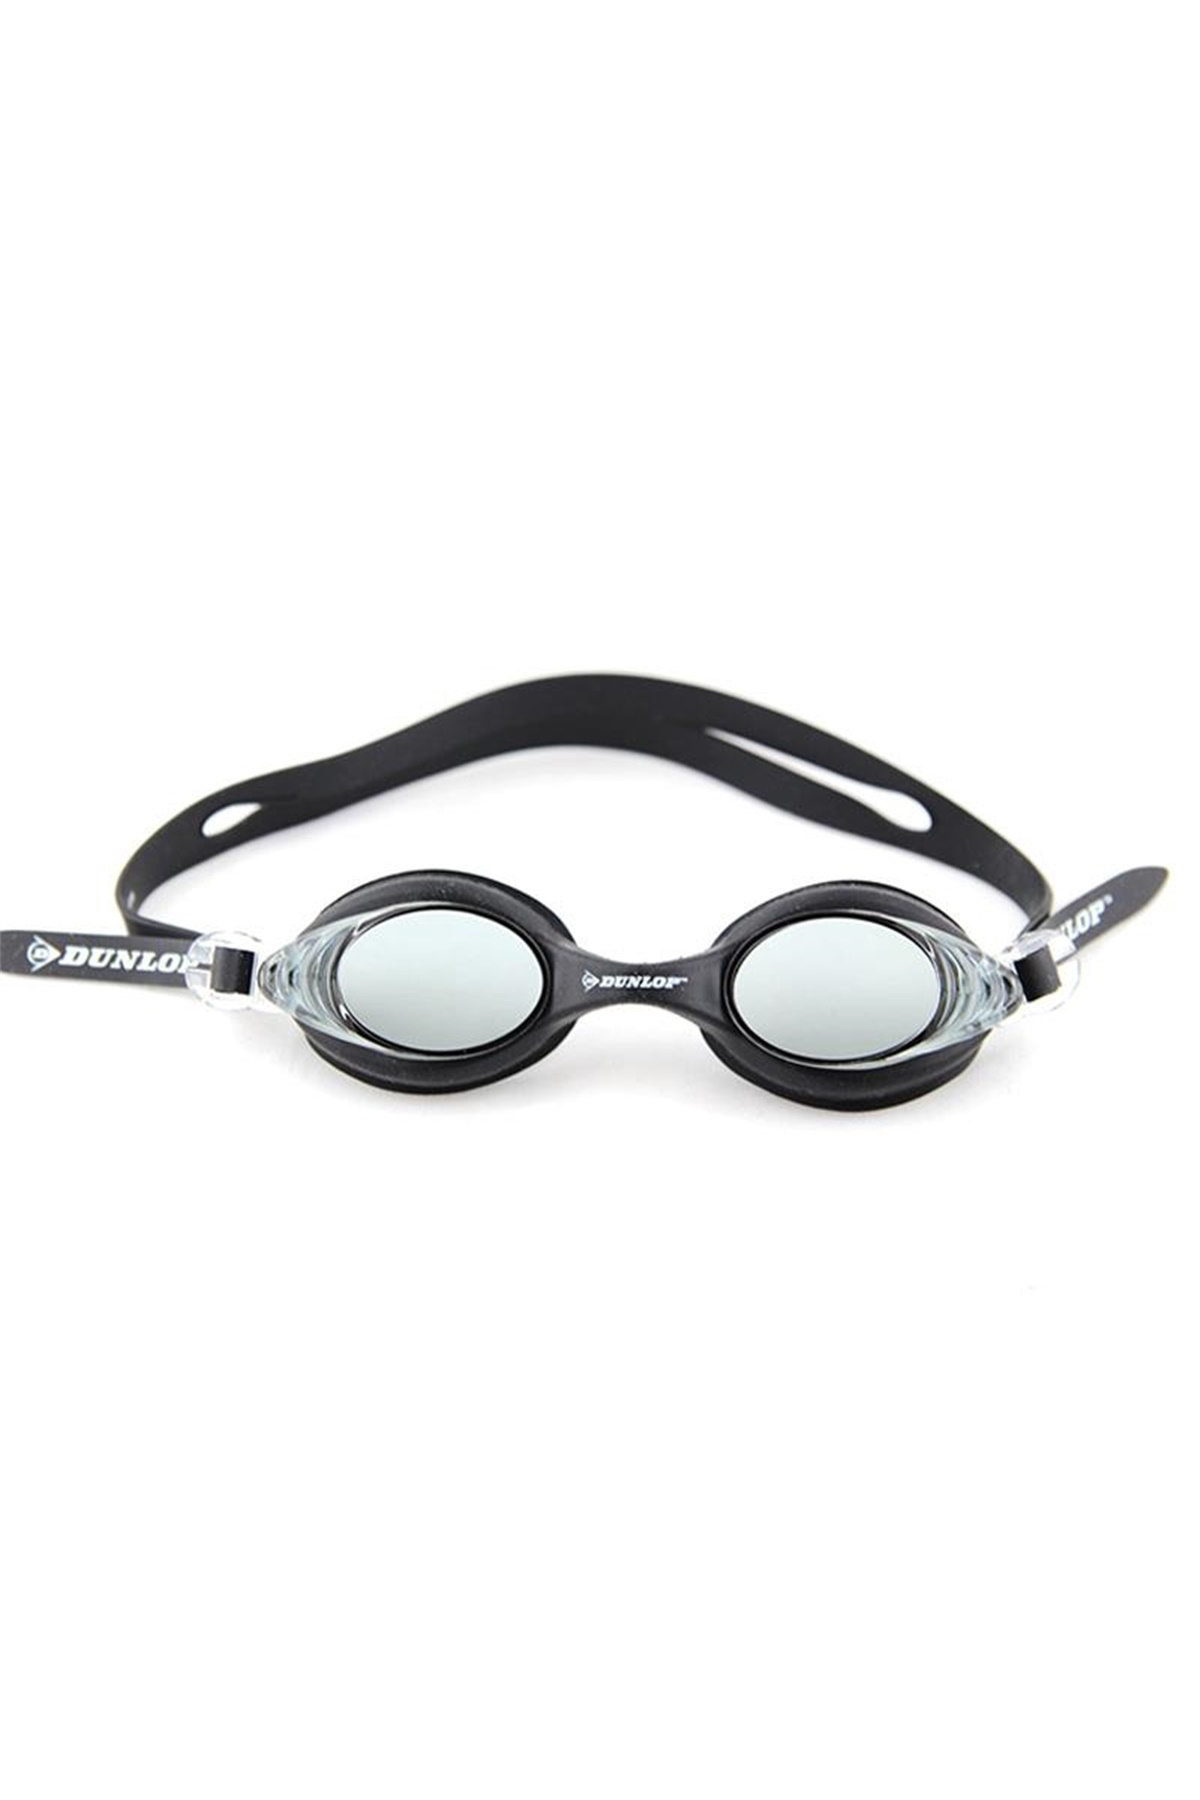 Dunlop Yüzücü Gözlüğü - Siyah